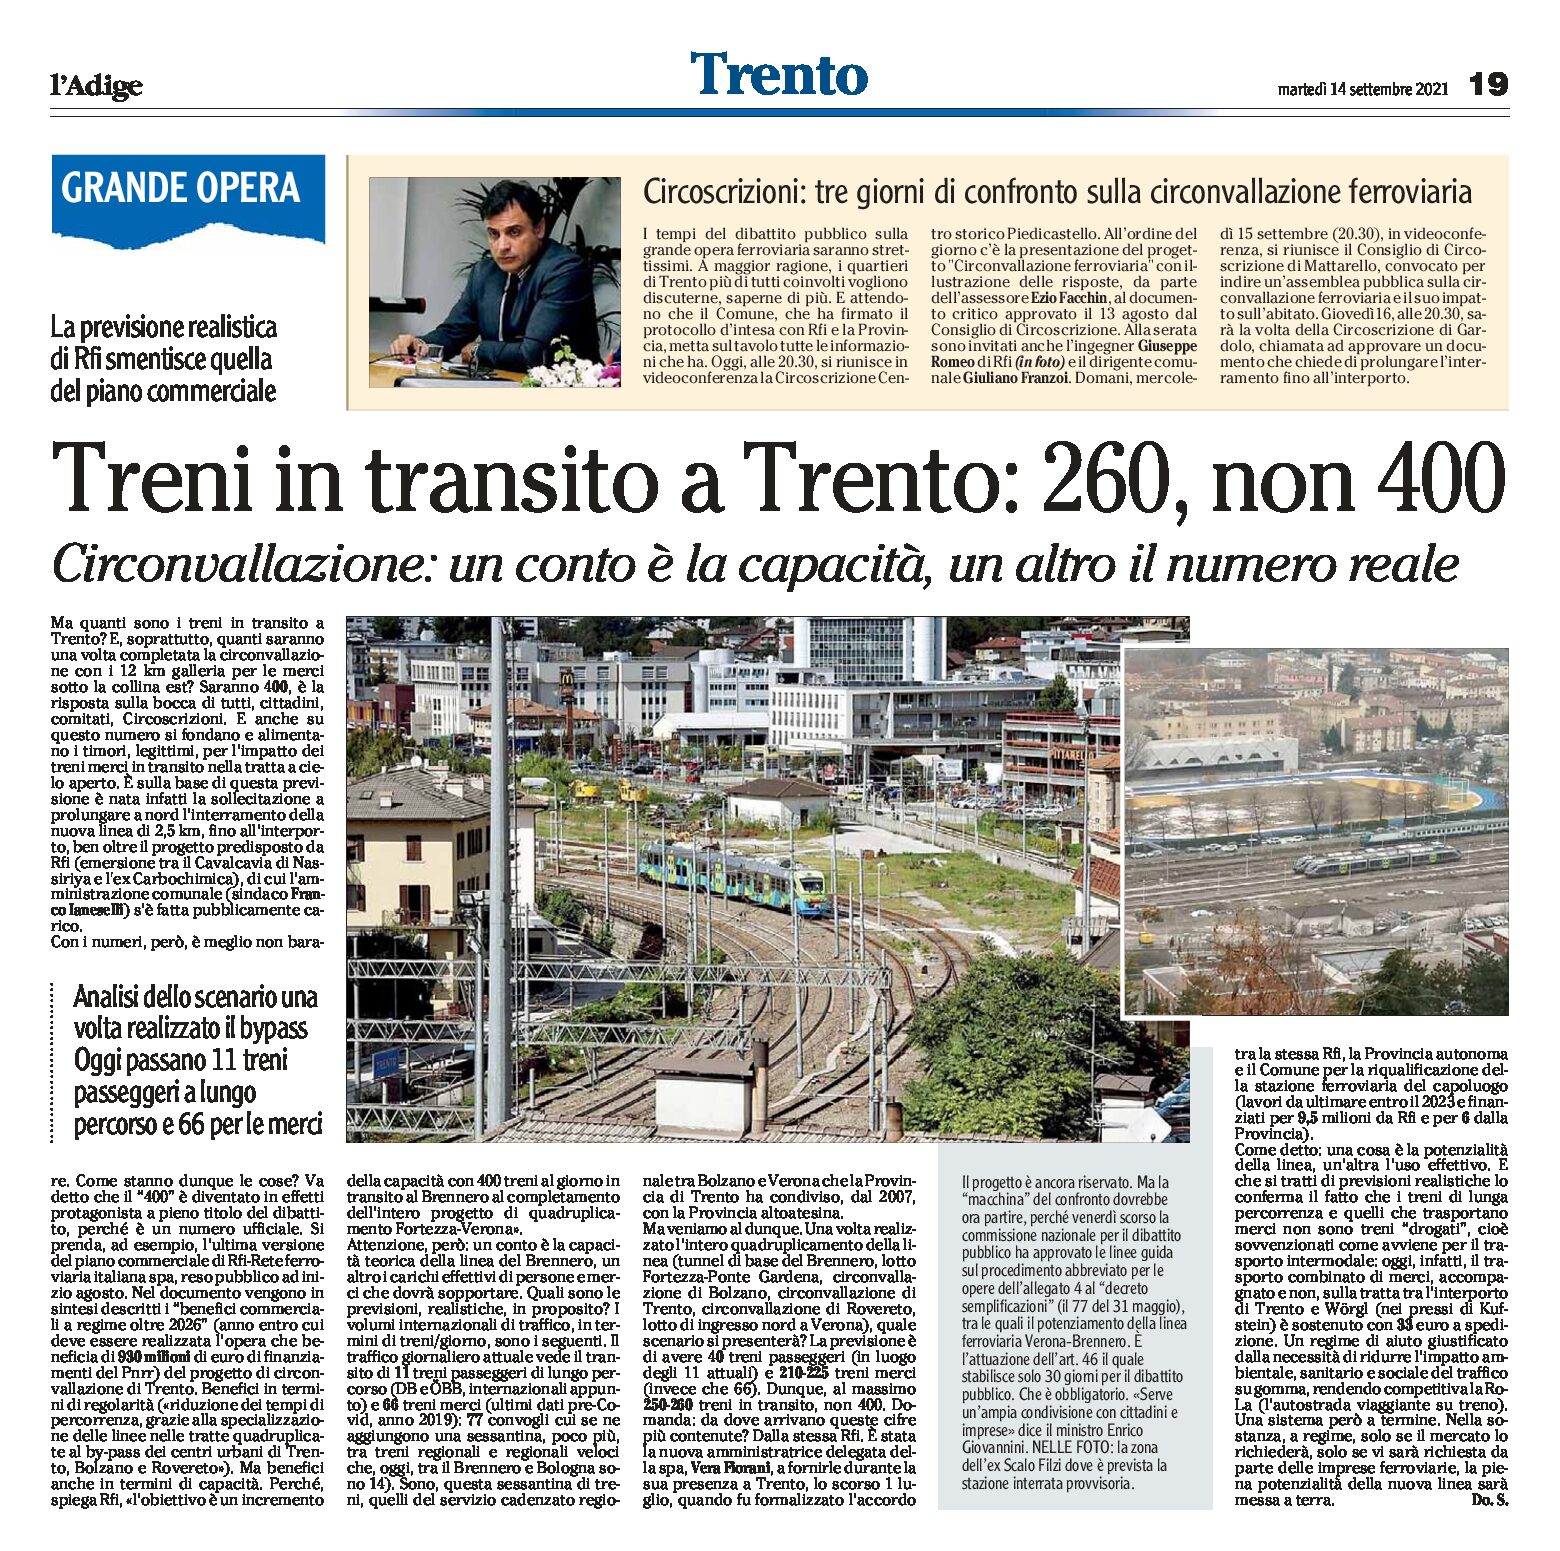 Treni in transito a Trento: 260, non 400